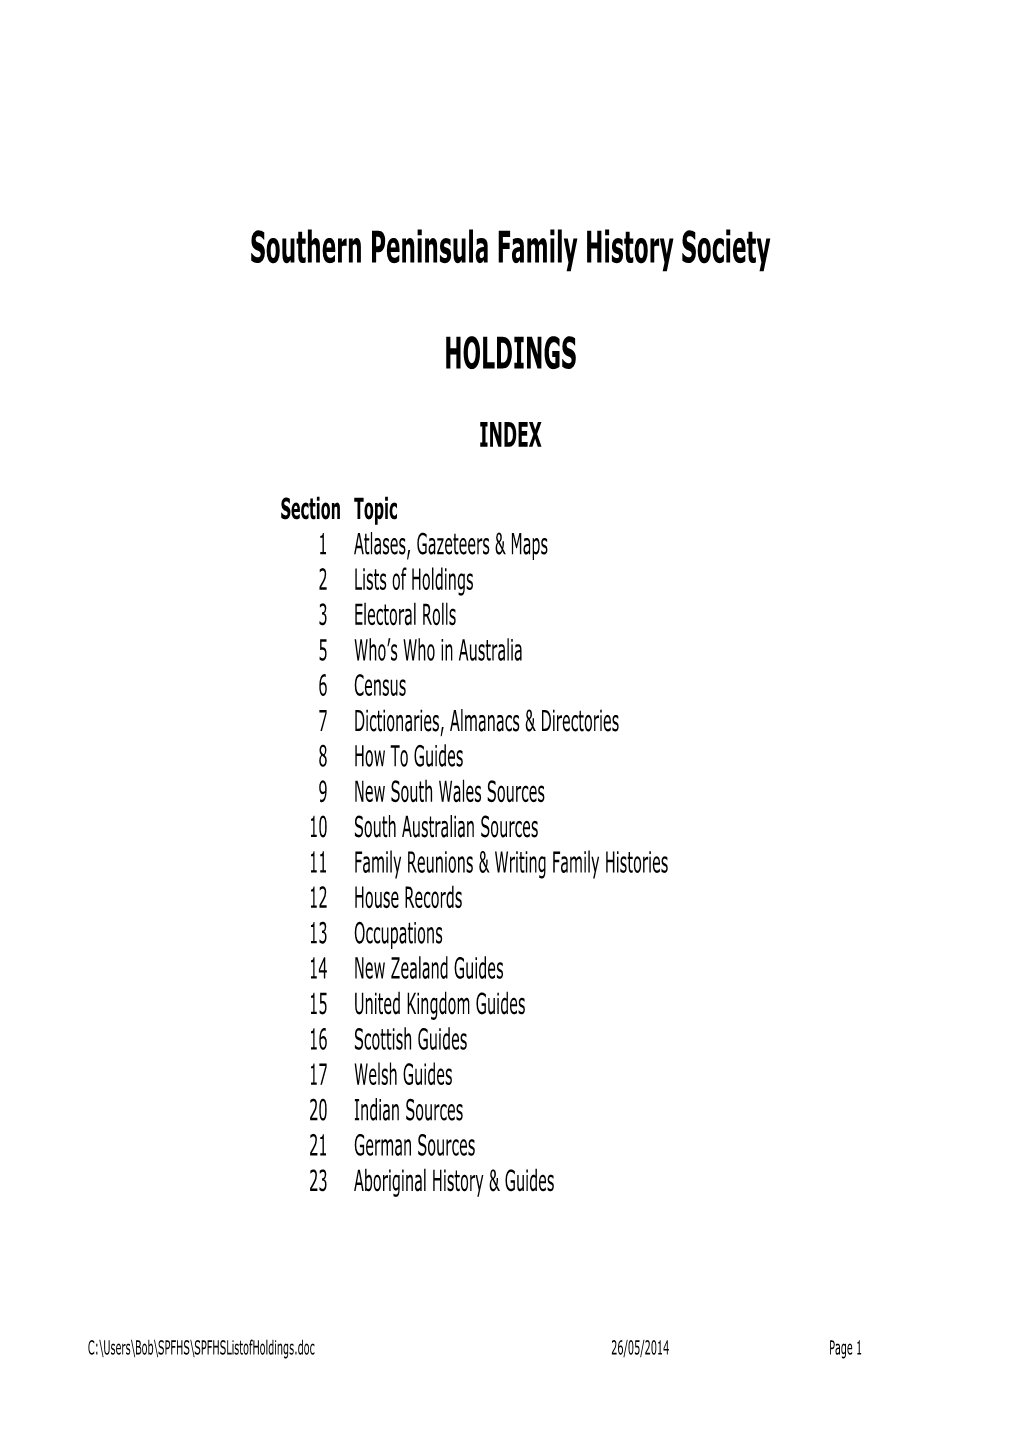 Southern Peninsula Family History Society HOLDINGS